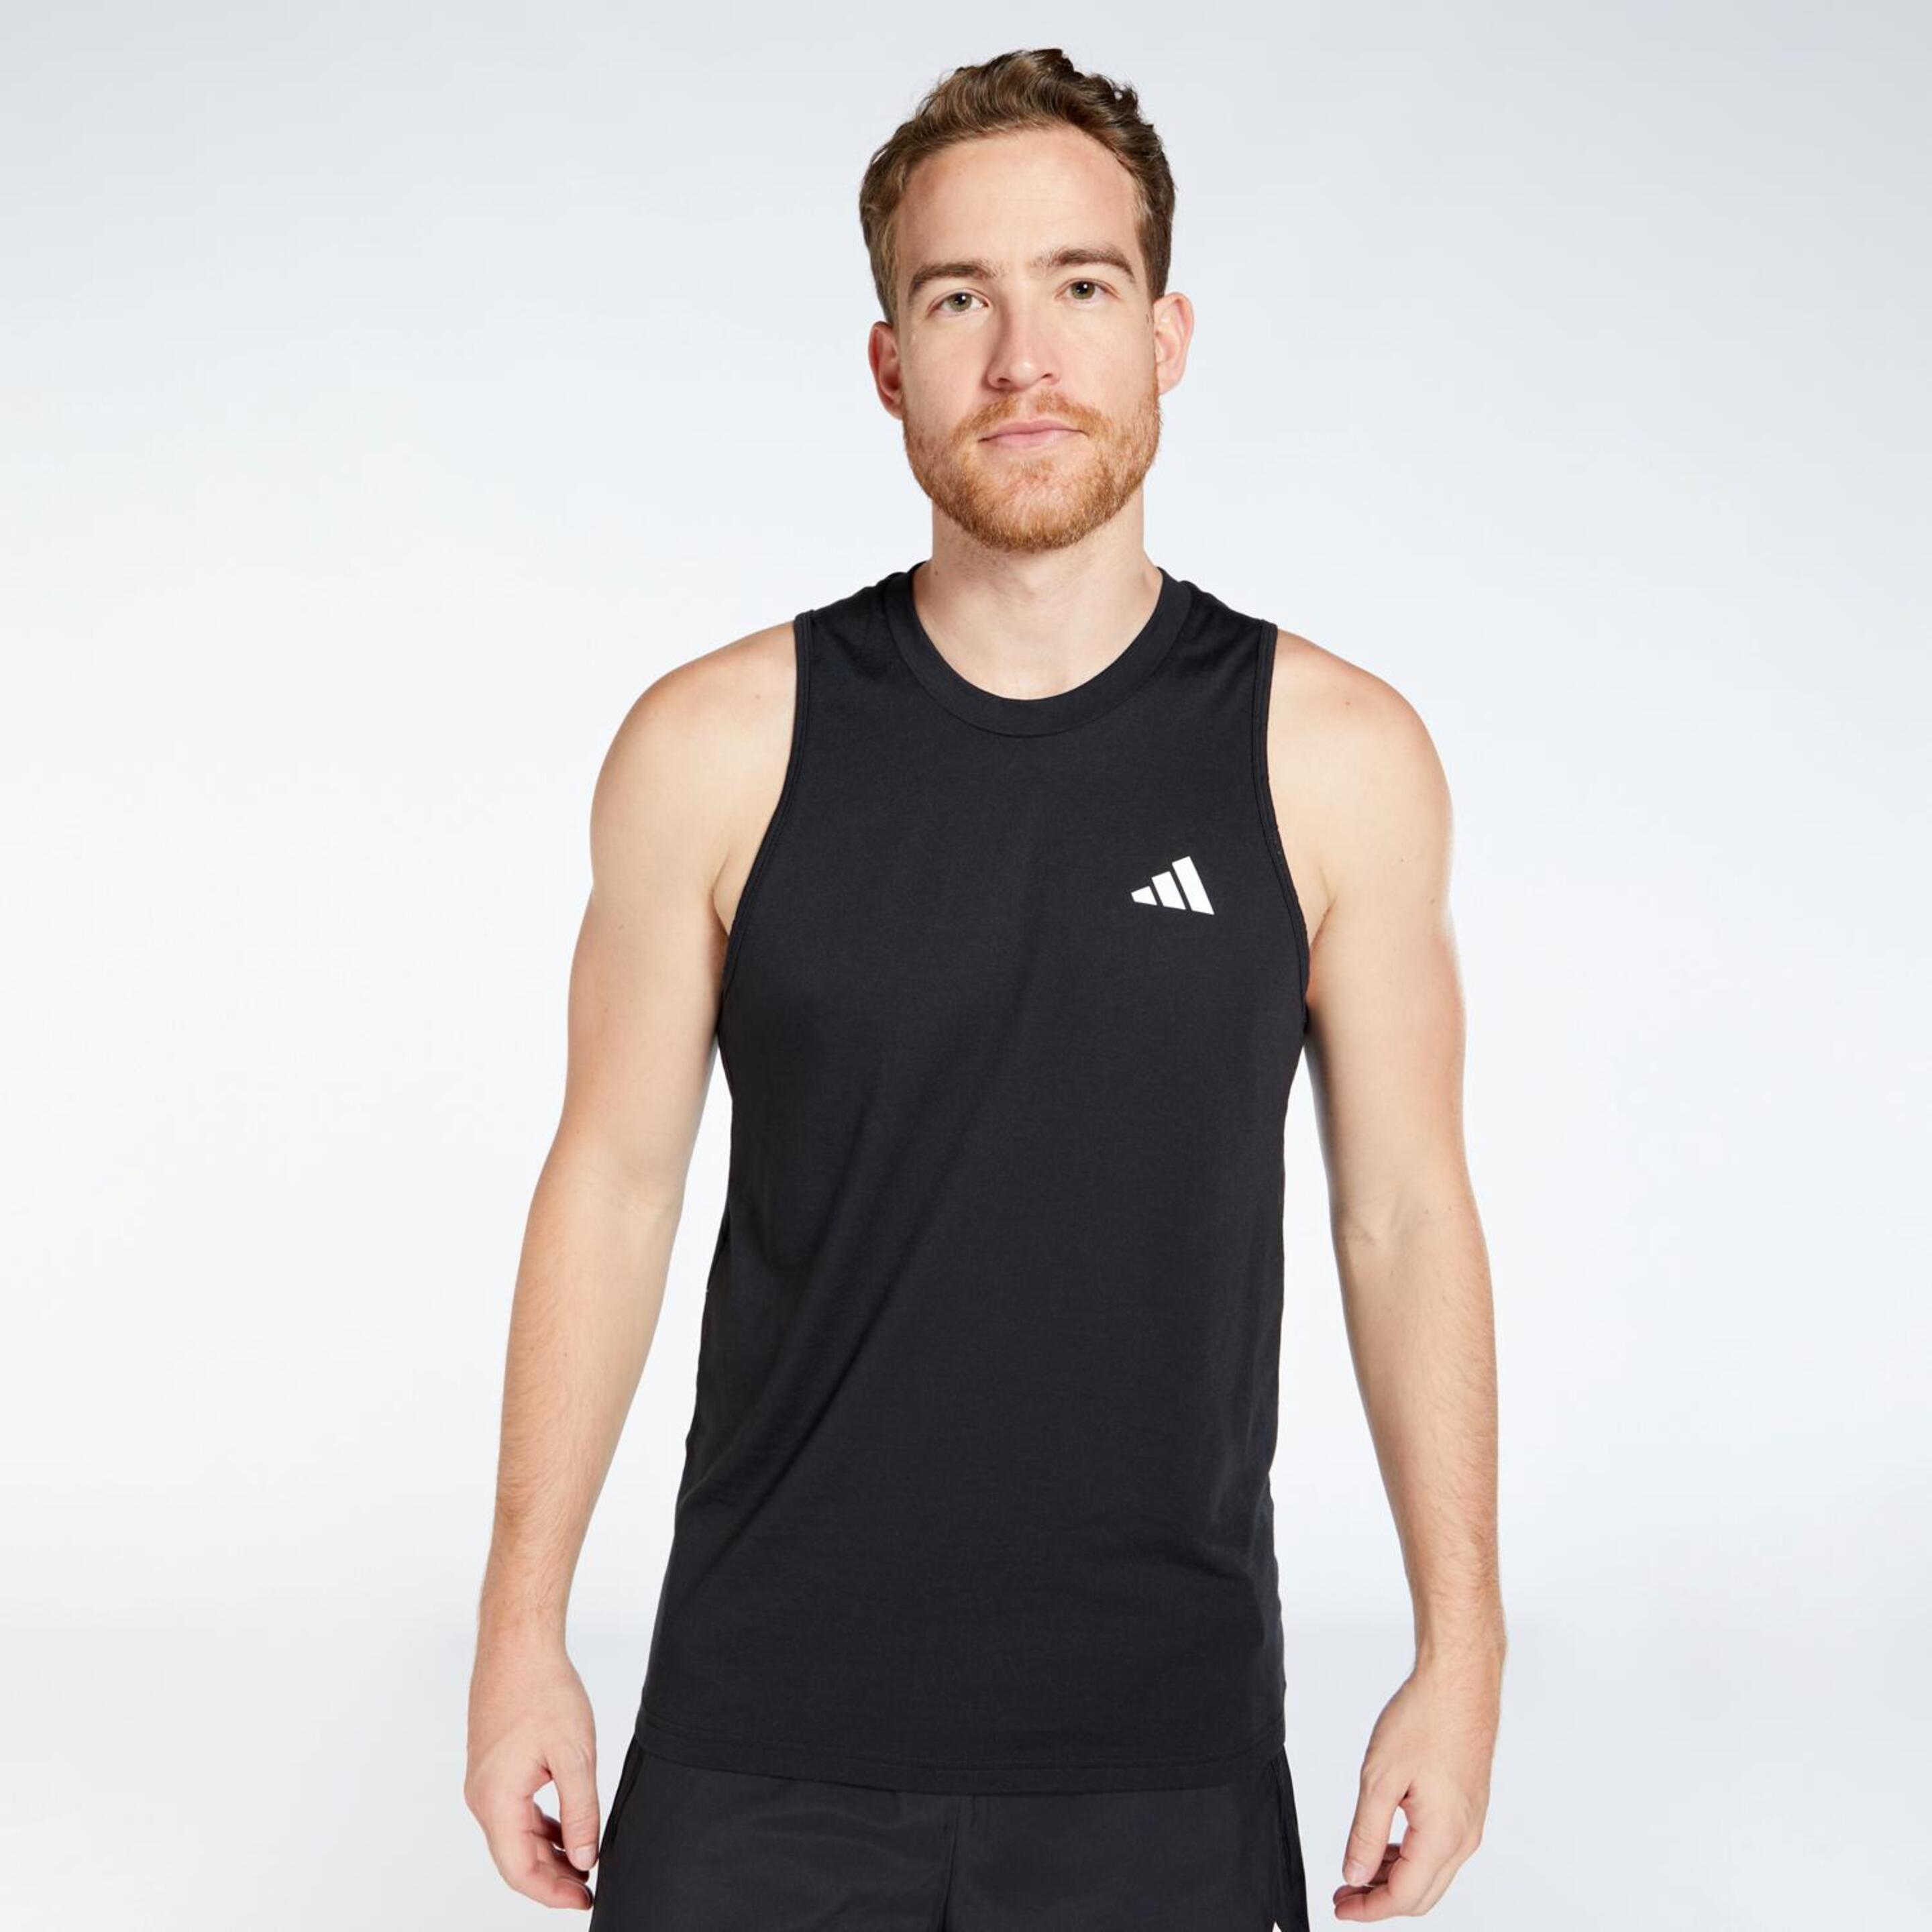 Camiseta adidas - Negro - Camiseta Running Hombre